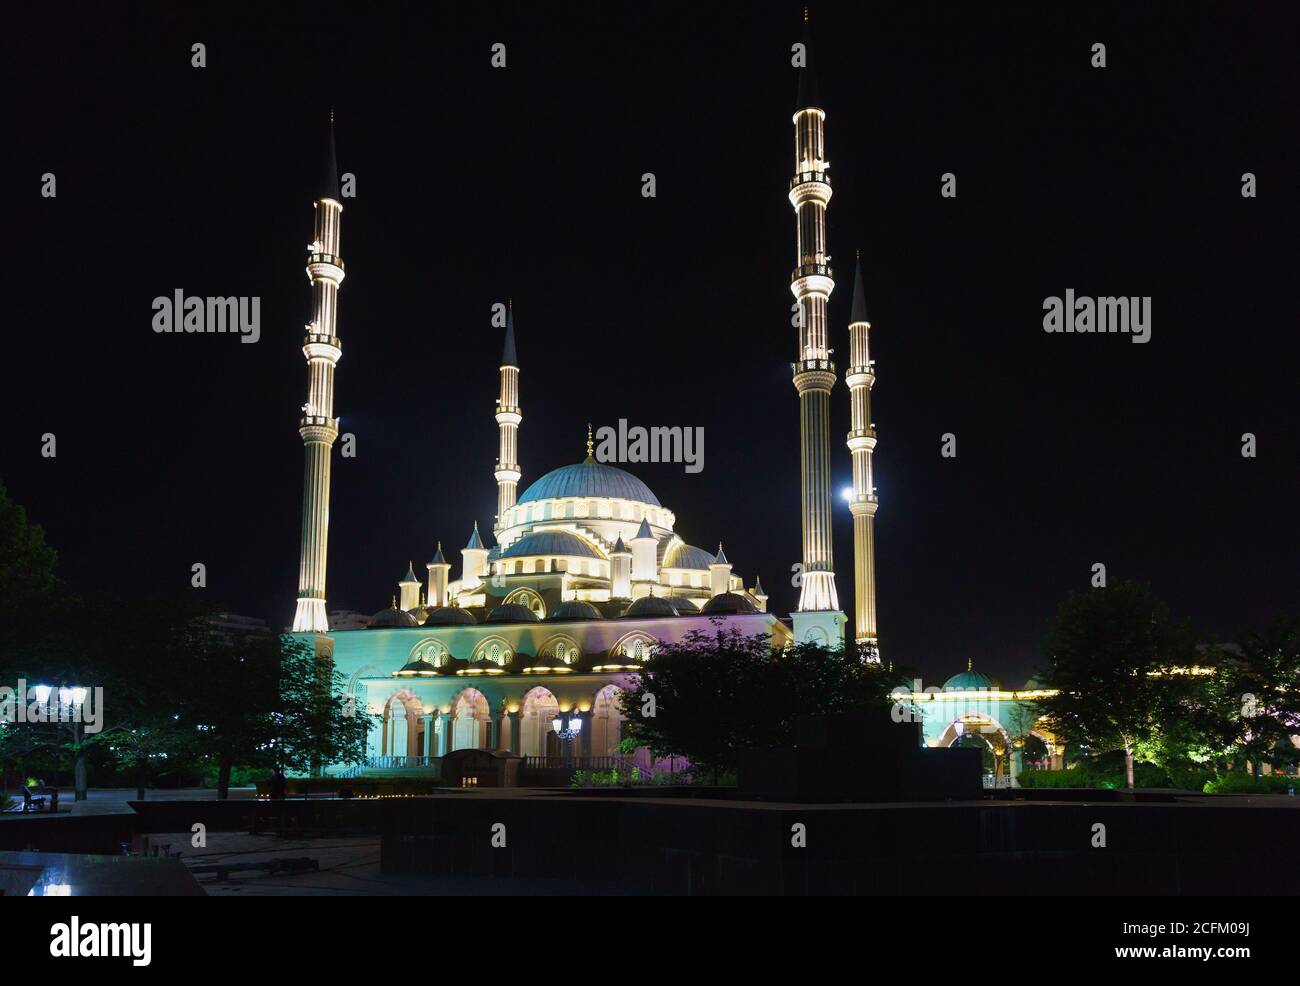 Grosny, Tschetschenische Republik, Russland - 01. Juni 2019: Moschee Herz Tschetscheniens nach Akhmat Kadyrow benannt, im Jahr 2008 im Stadtzentrum gebaut. Ein beliebtes att Stockfoto